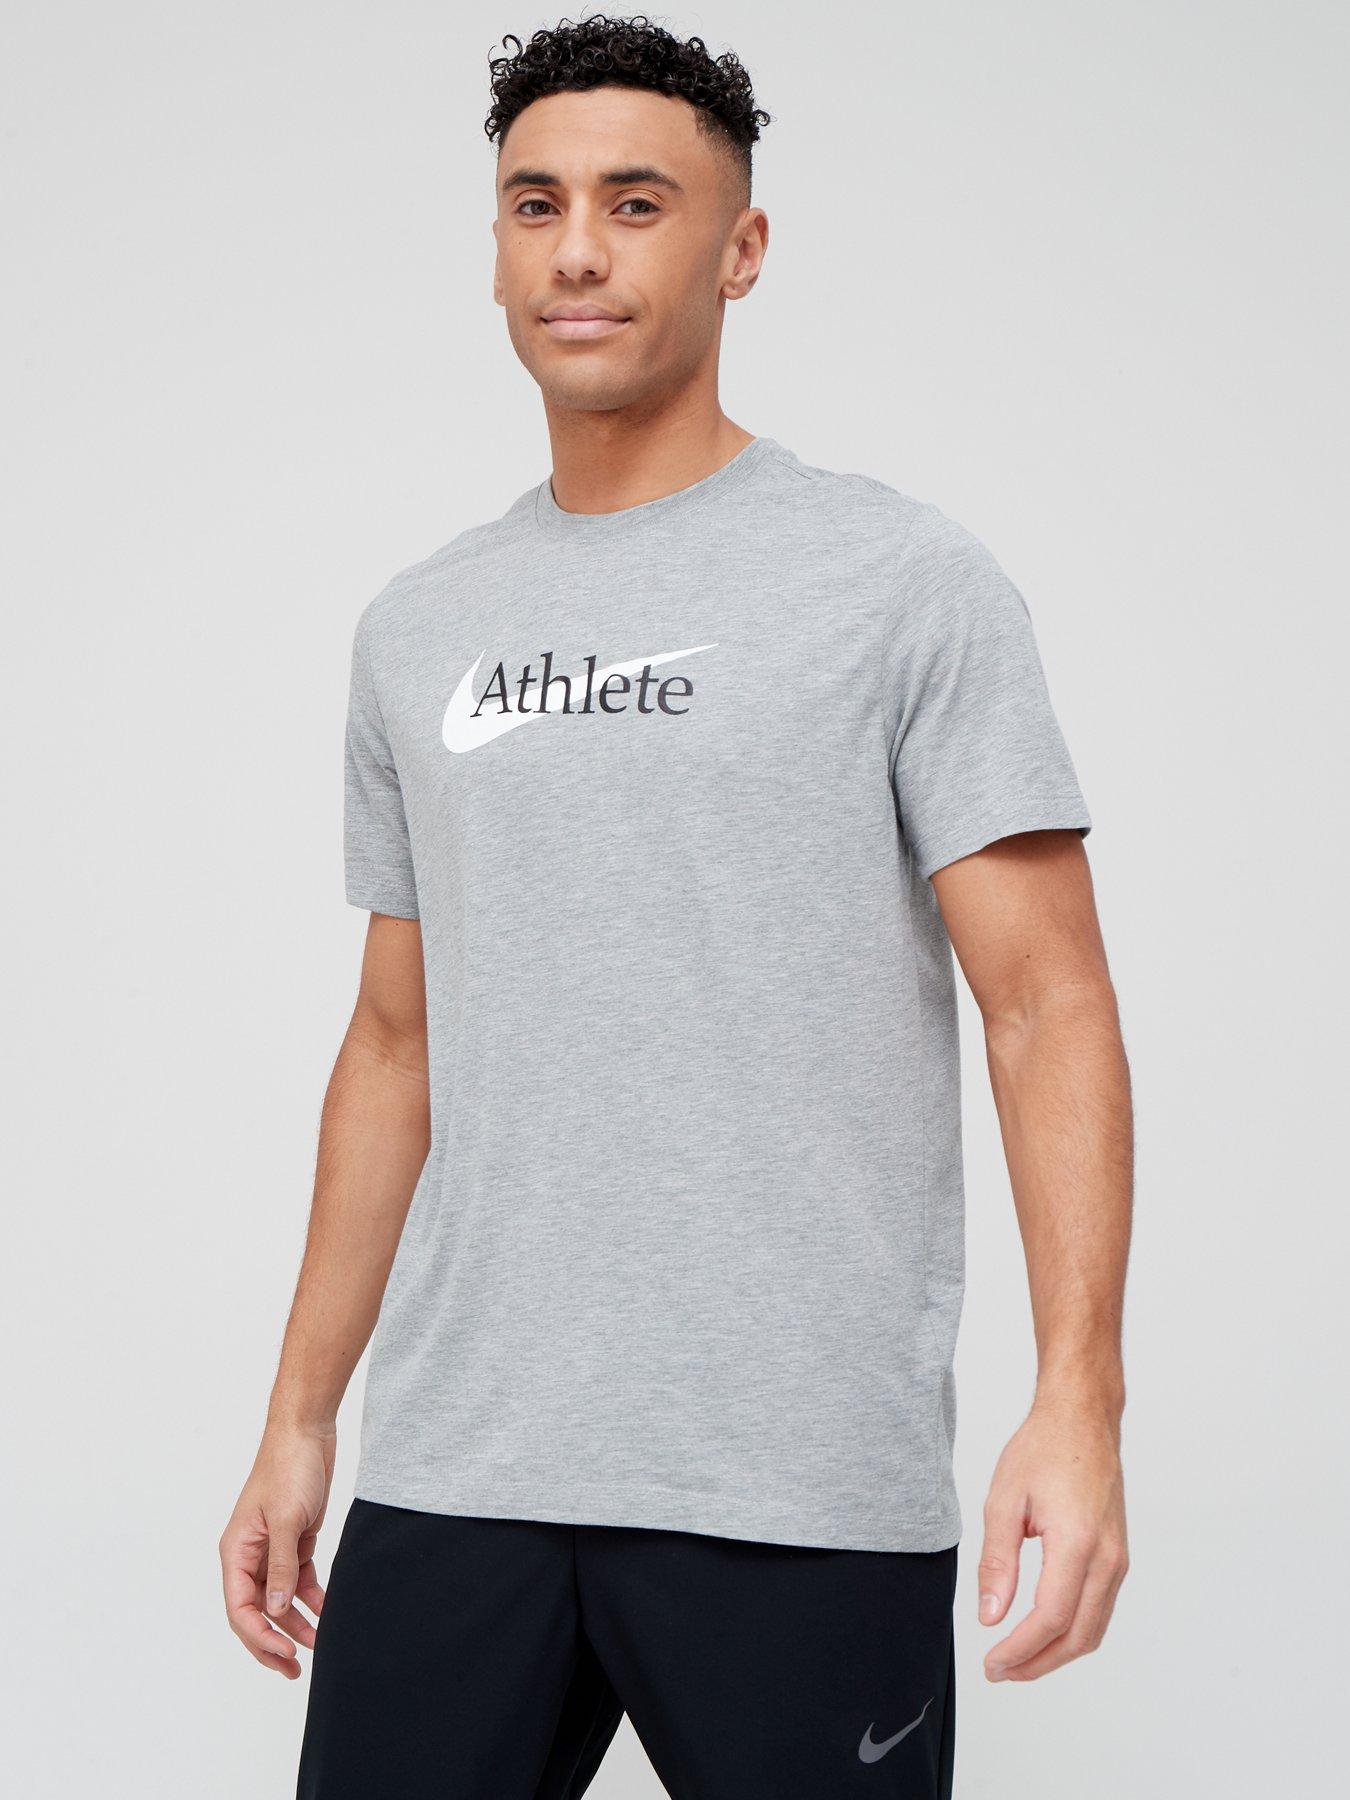 nike athlete shirt